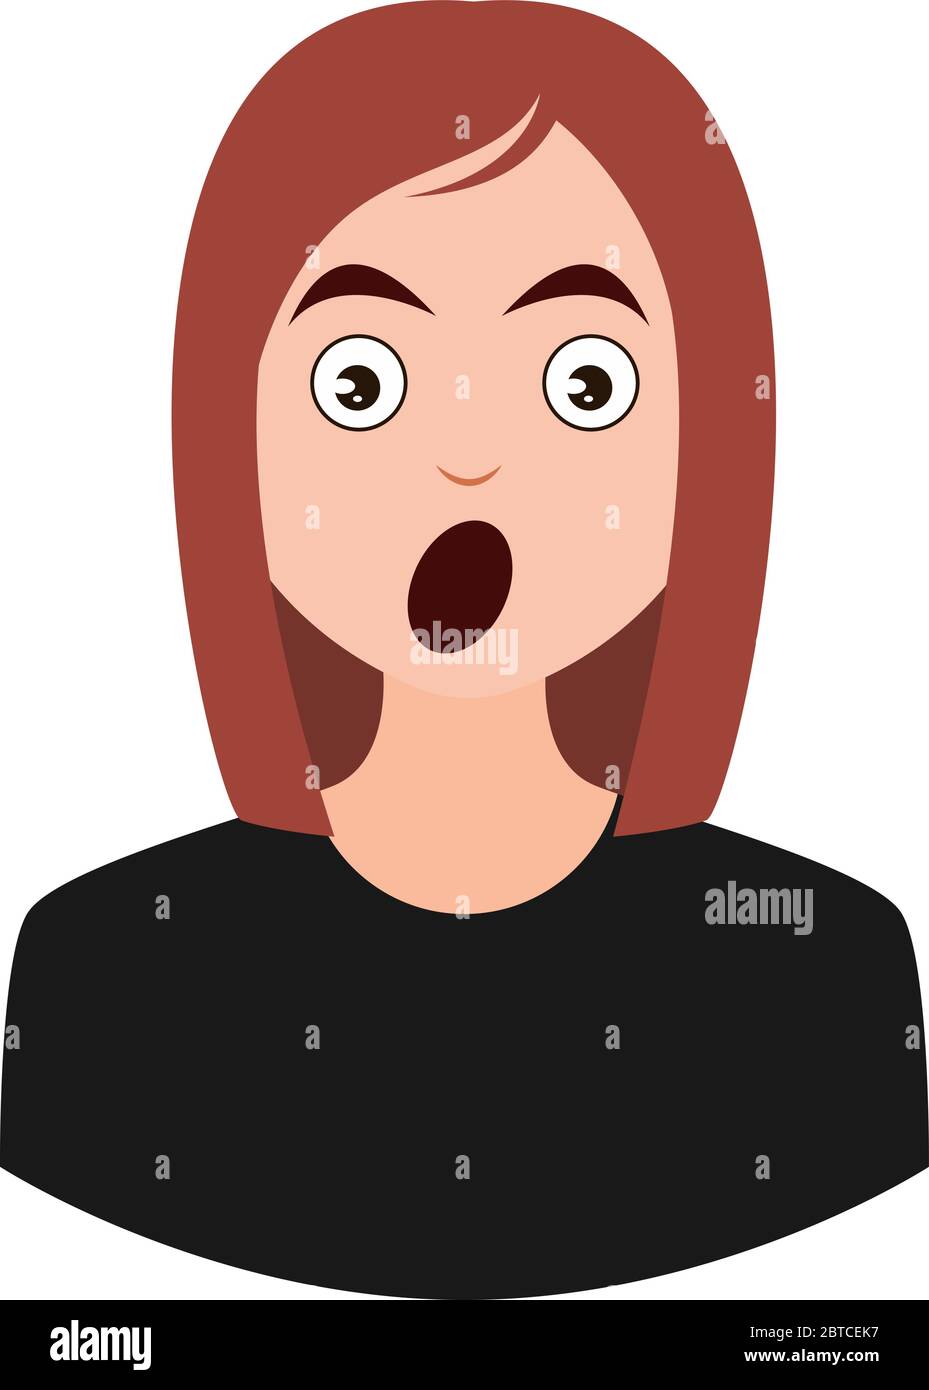 Shocked girl emoji, illustration, vector on white background Stock Vector